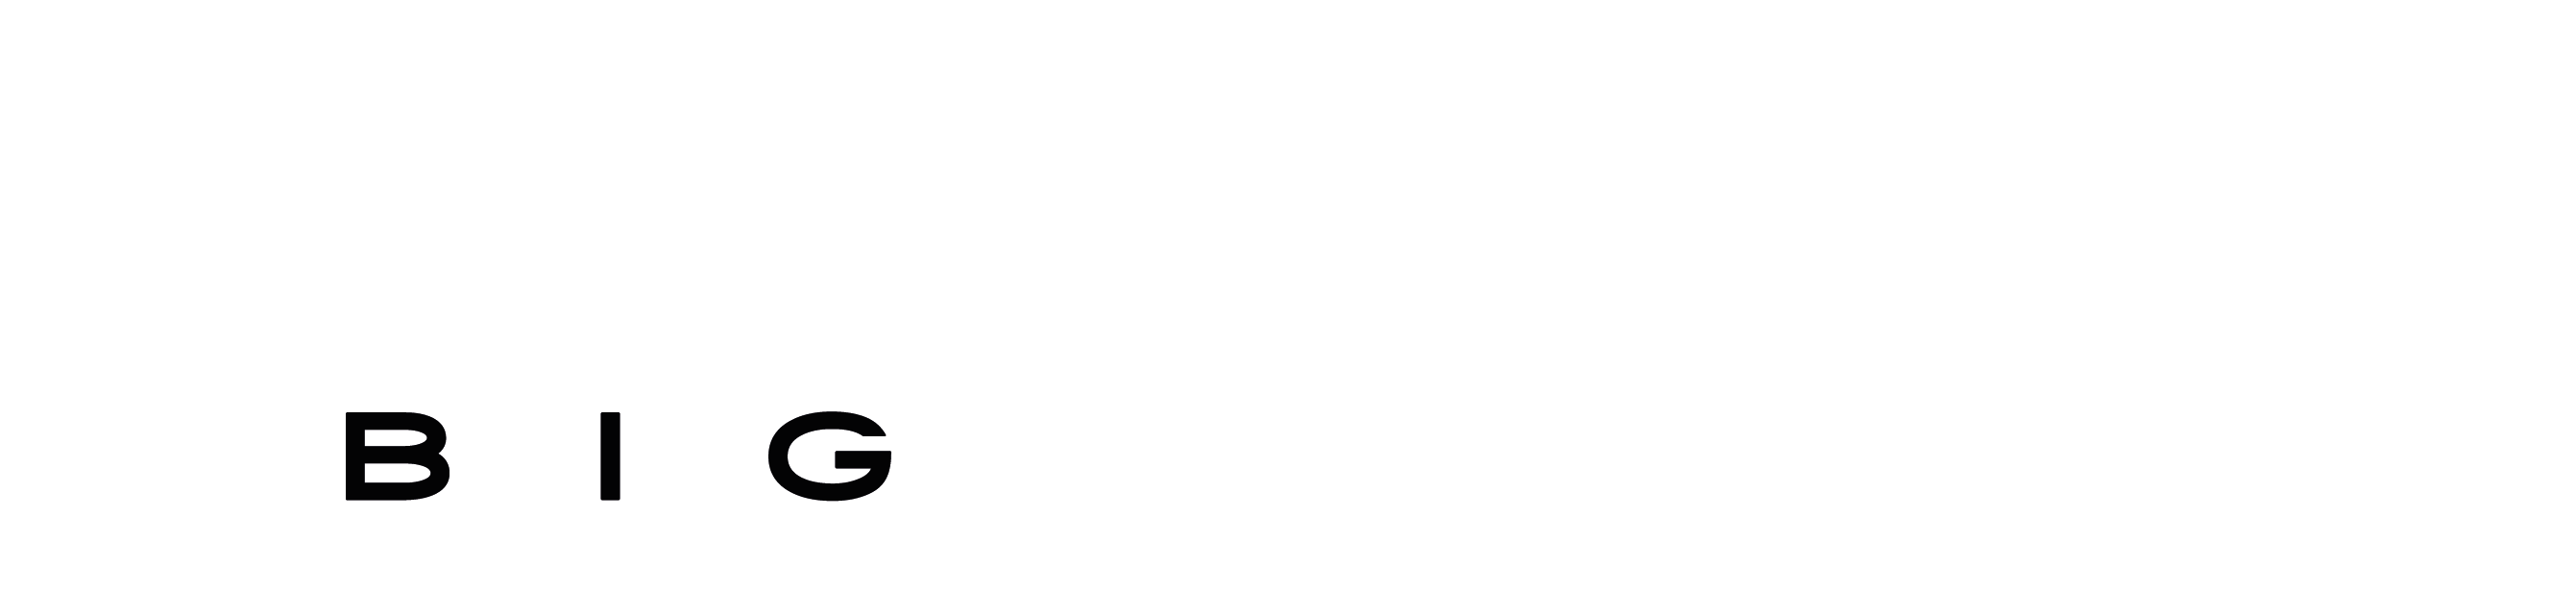 Gamescom Latam - BIG Festival